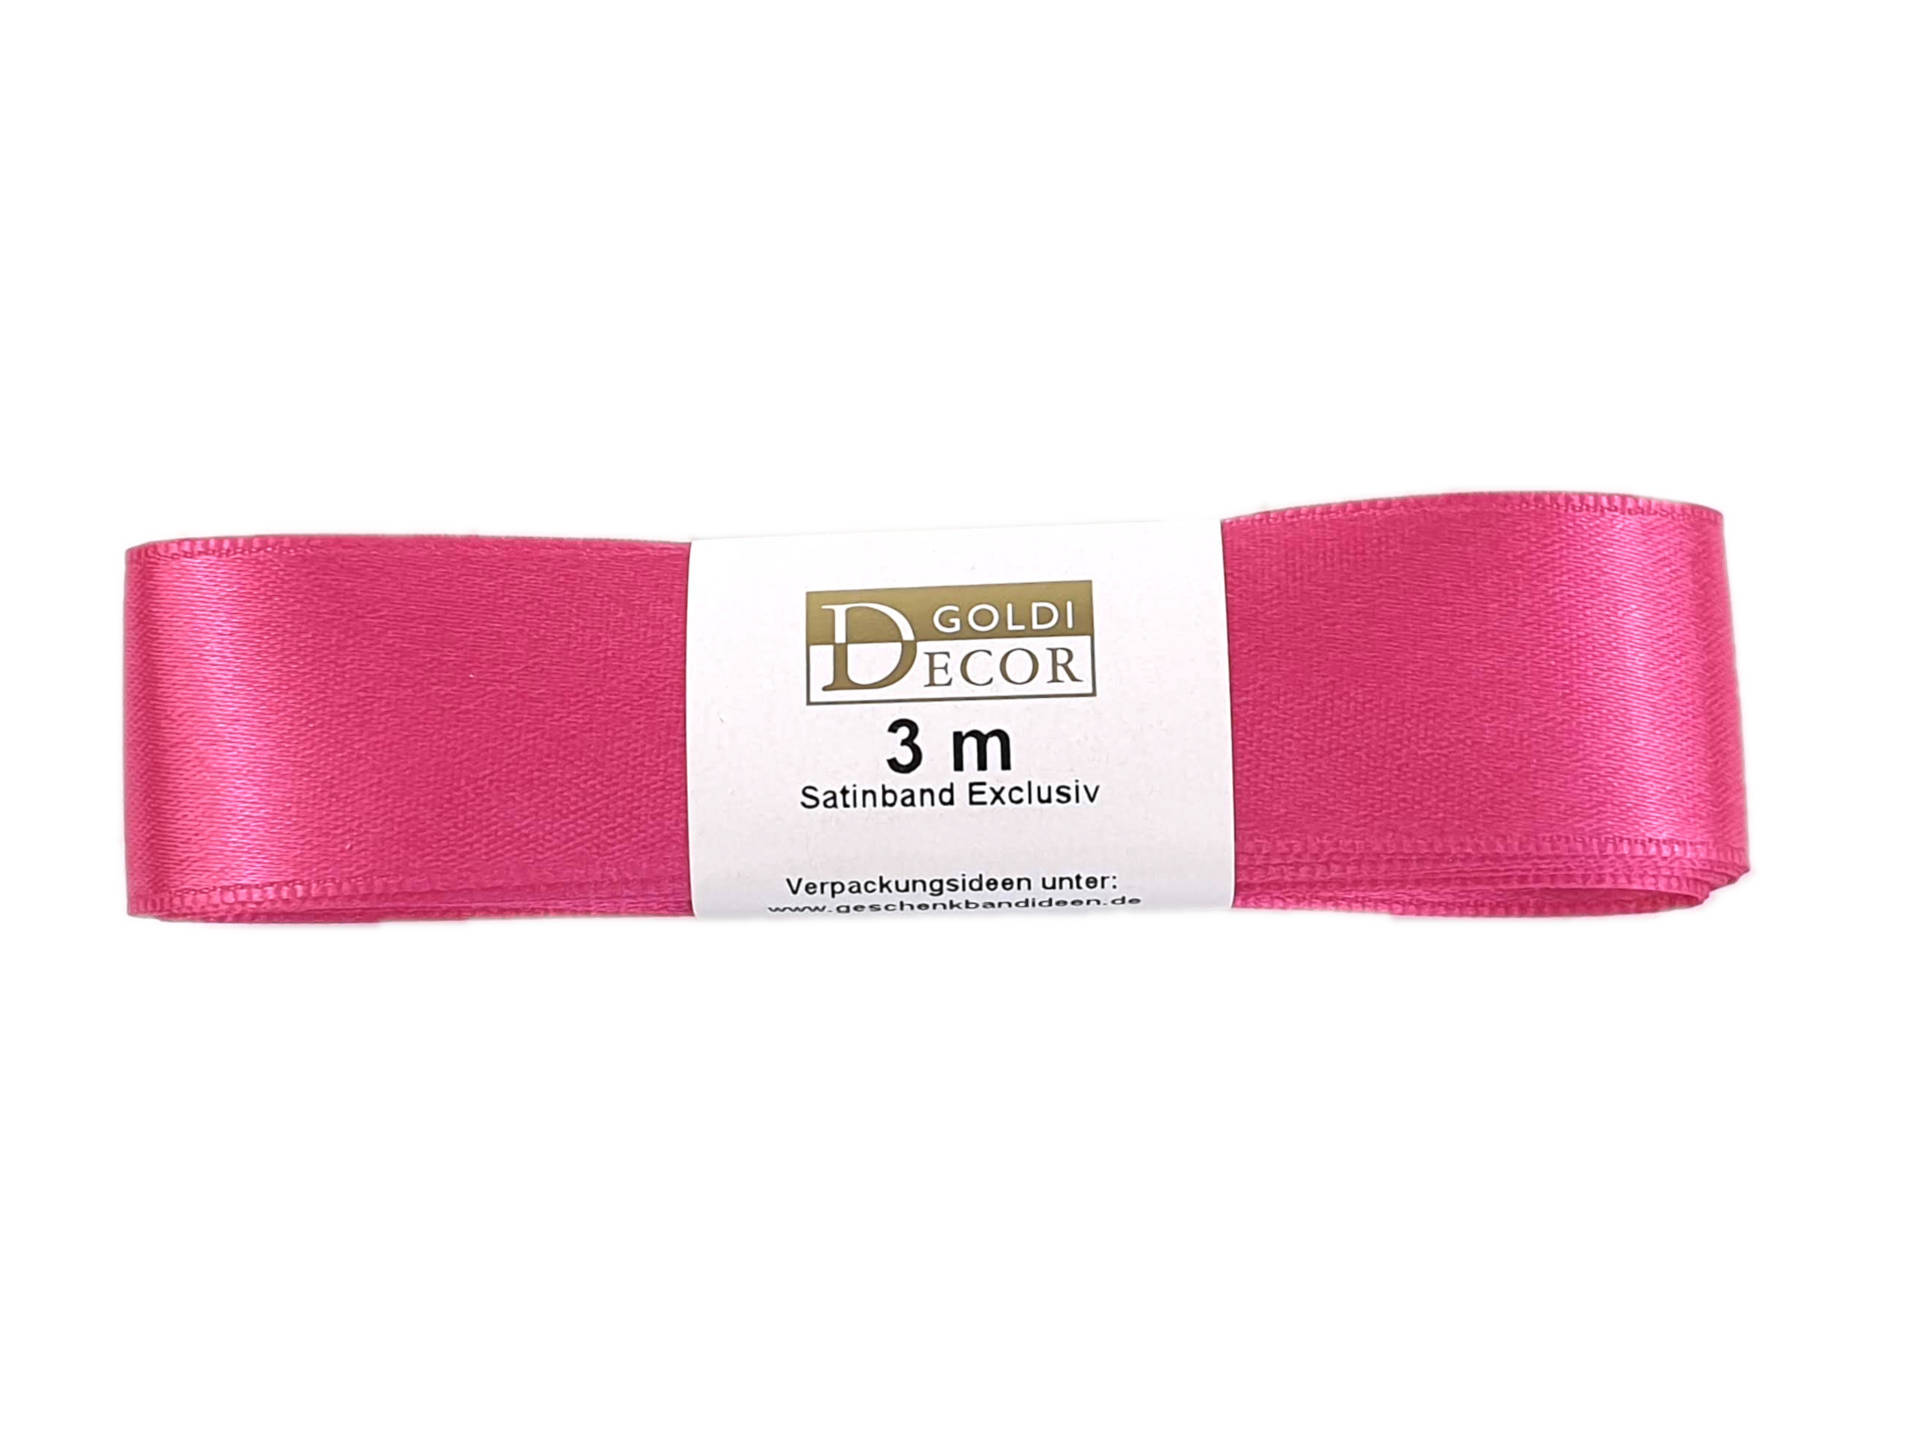 Premium-Satinband, pink, 25 mm breit, 3 m Strängchen - satinband, premium-qualitat, satinbaender, dauersortiment